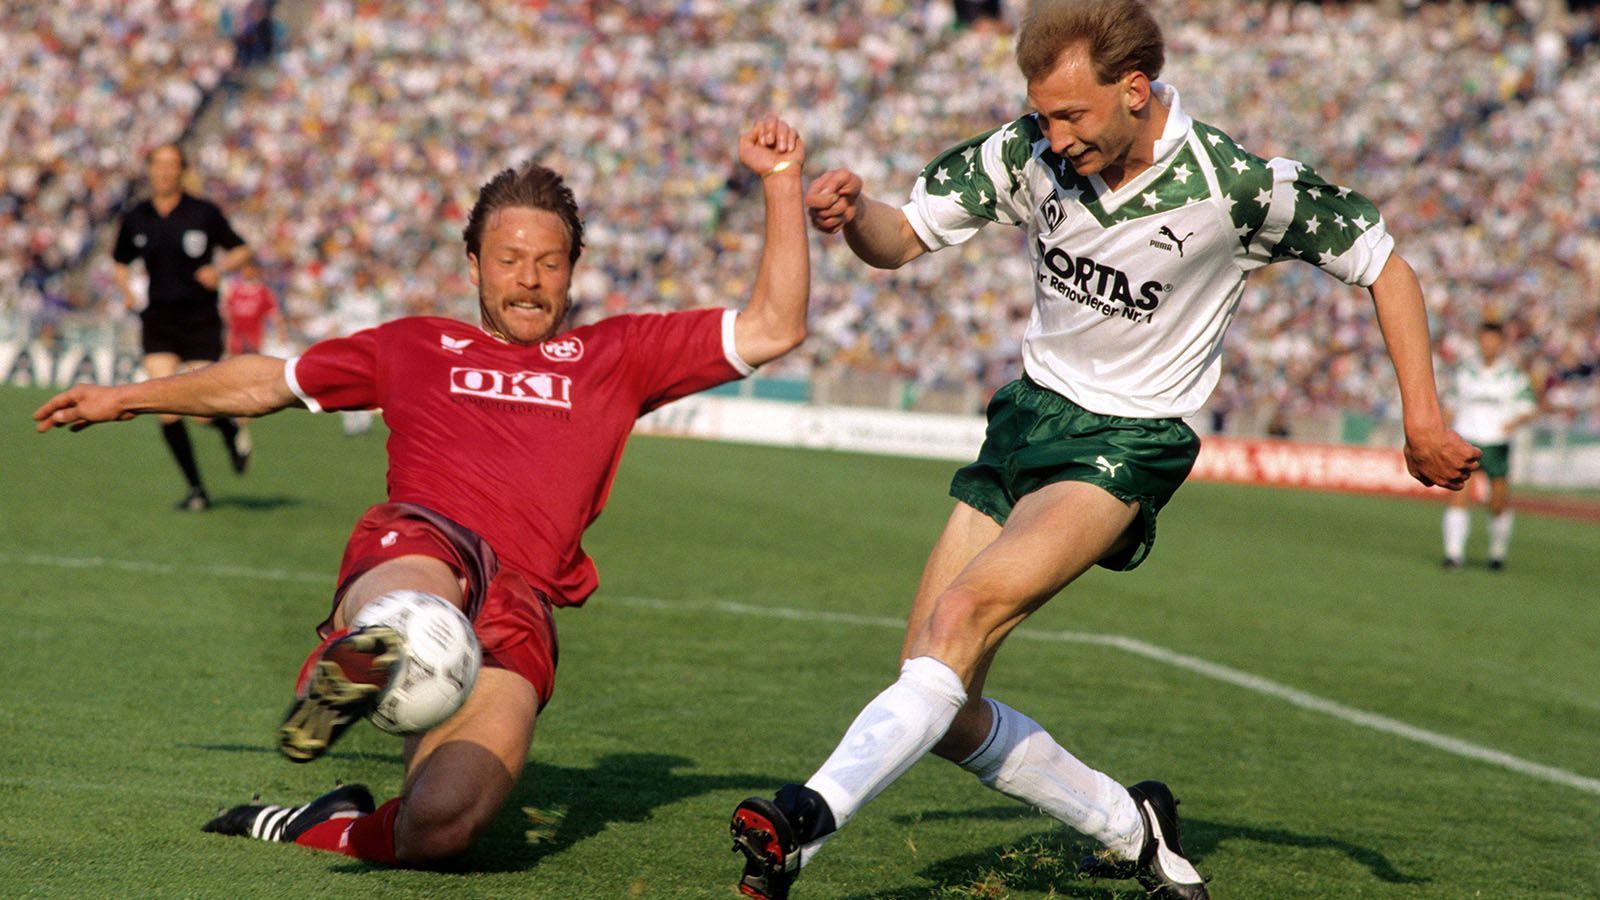 
                <strong>Saison 1990/91</strong><br>
                Herbstmeister: Werder Bremen 24:10 Punkte Deutscher Meister: 1. FC Kaiserslautern 48:20 Punkte
              